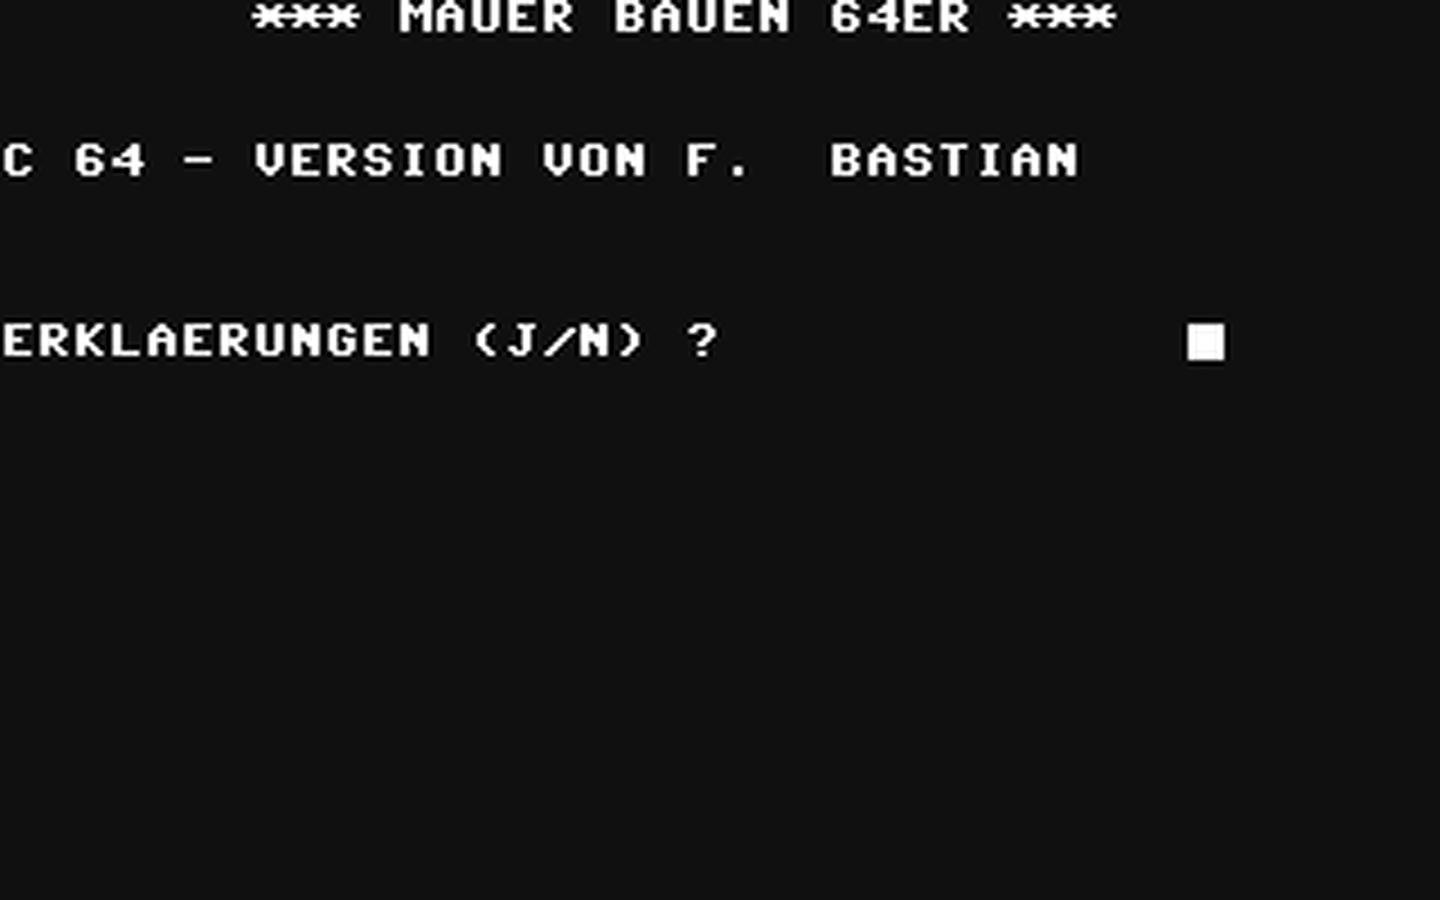 C64 GameBase Mauer_bauen_64er CW-Publikationen_Verlags_GmbH/RUN 1987